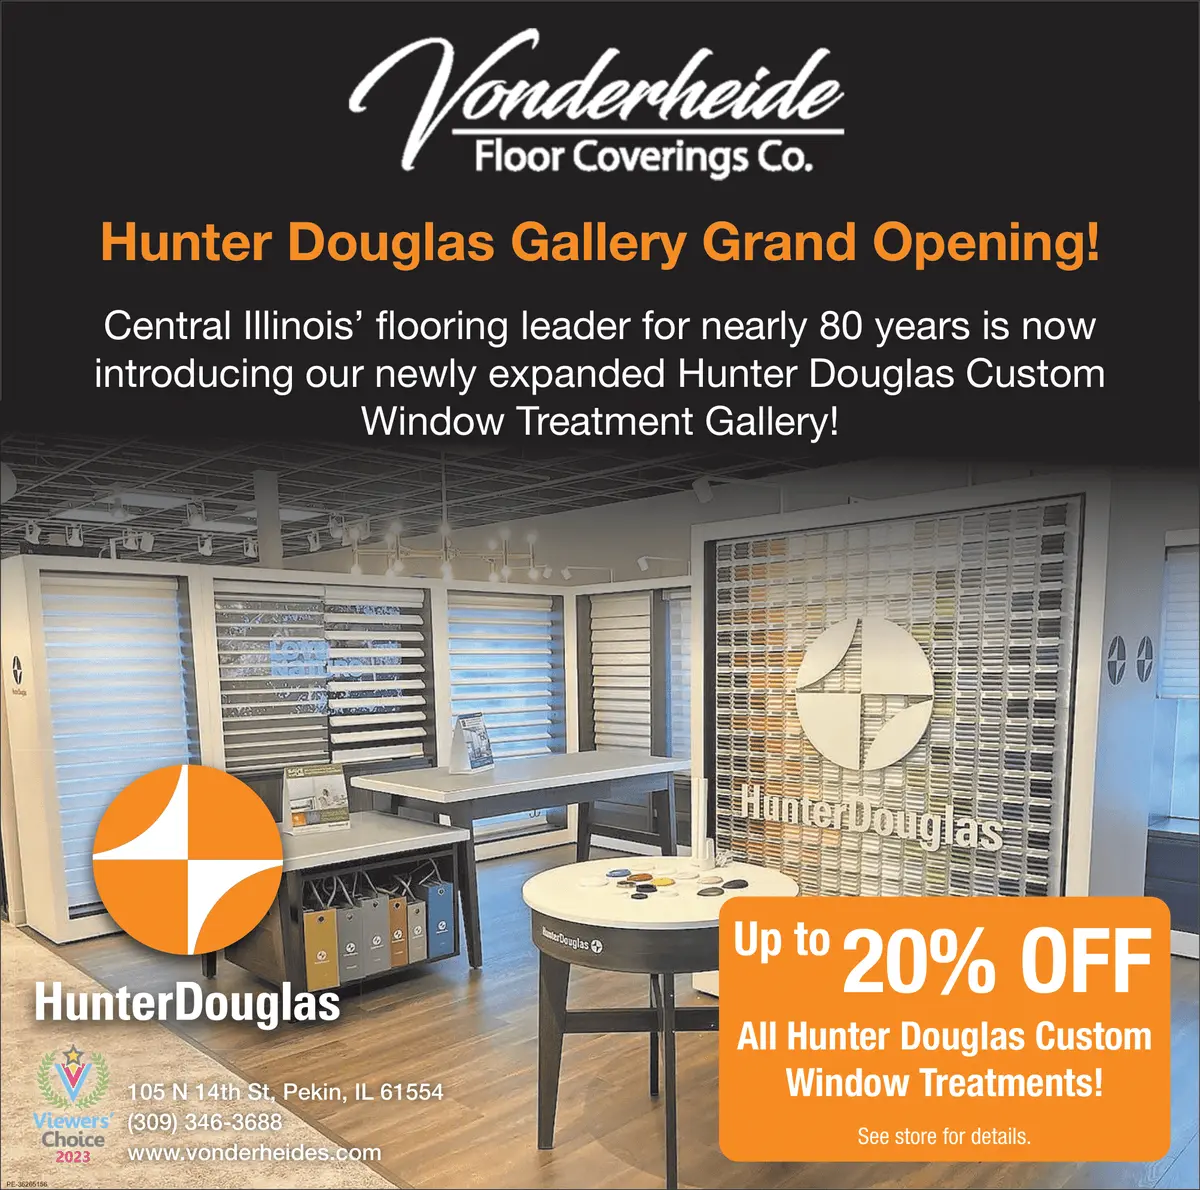 Hunter Douglas Gallery Grand Opening at Vonderheide Floor Coverings in Pekin In